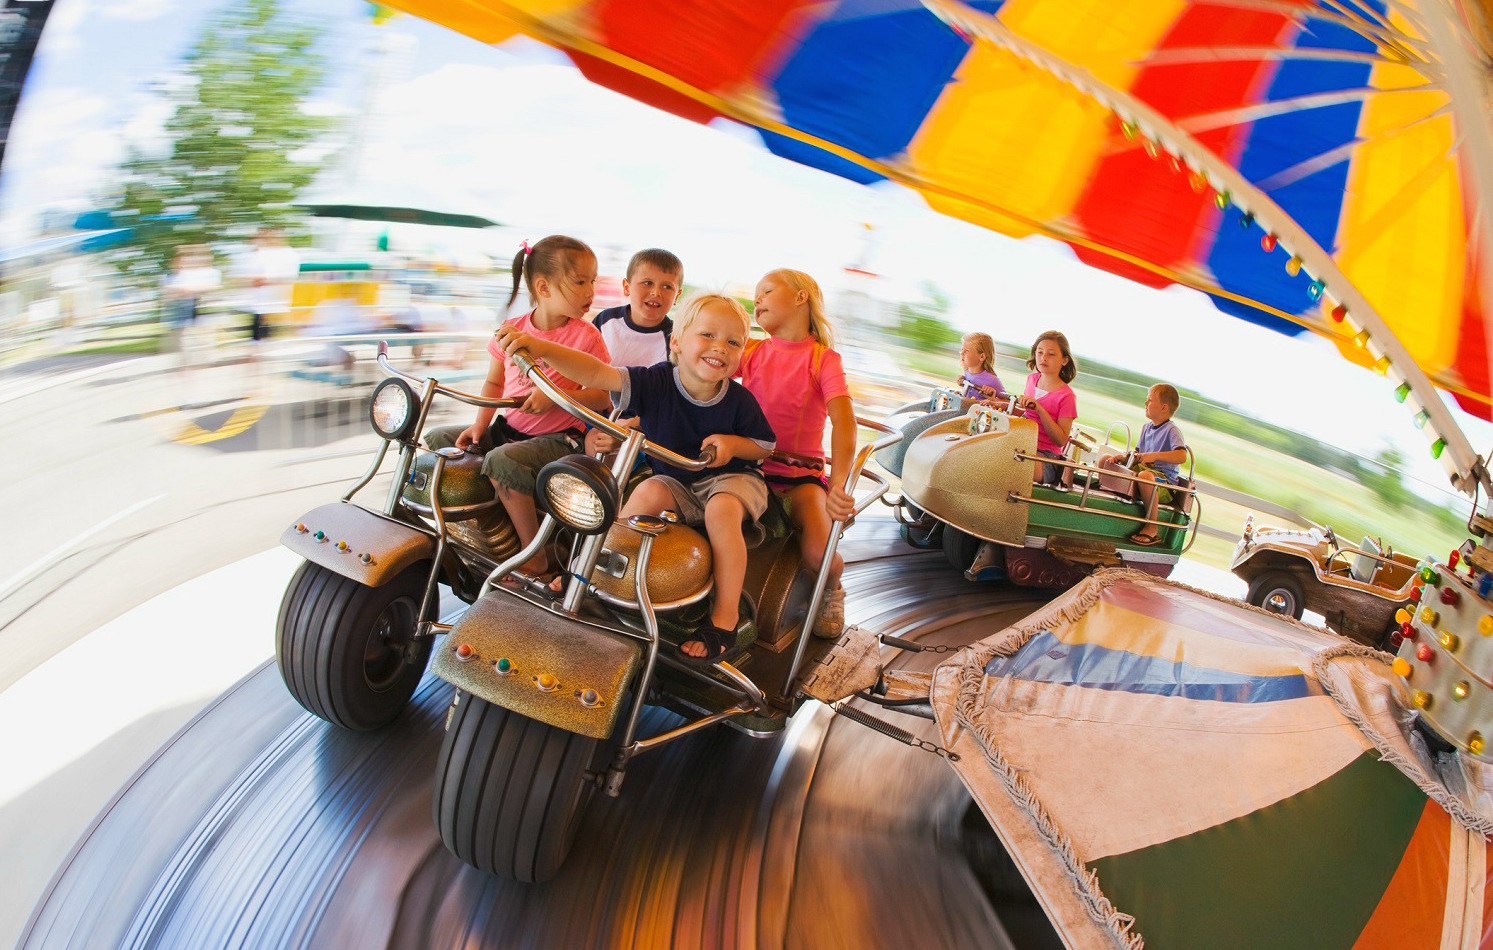 Kids on a ride at an amusement park.